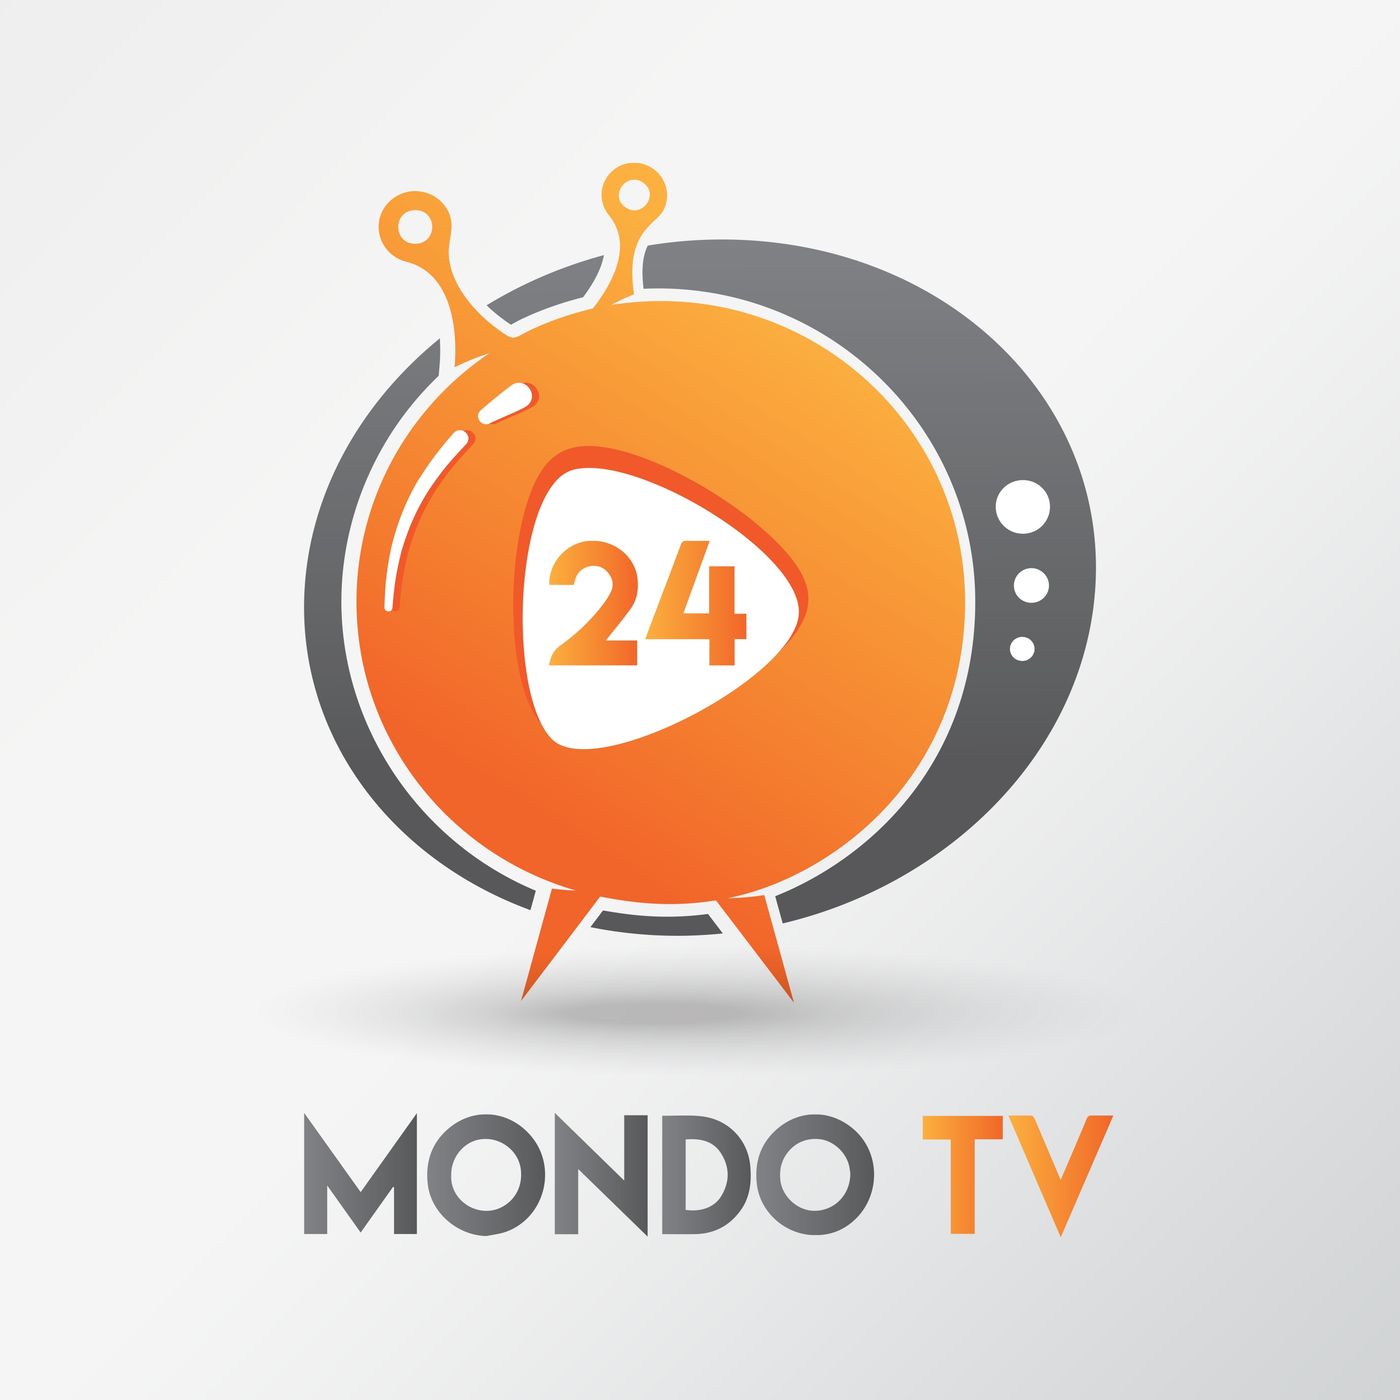 MondoTV 24 by Lorenzo Pugnaloni